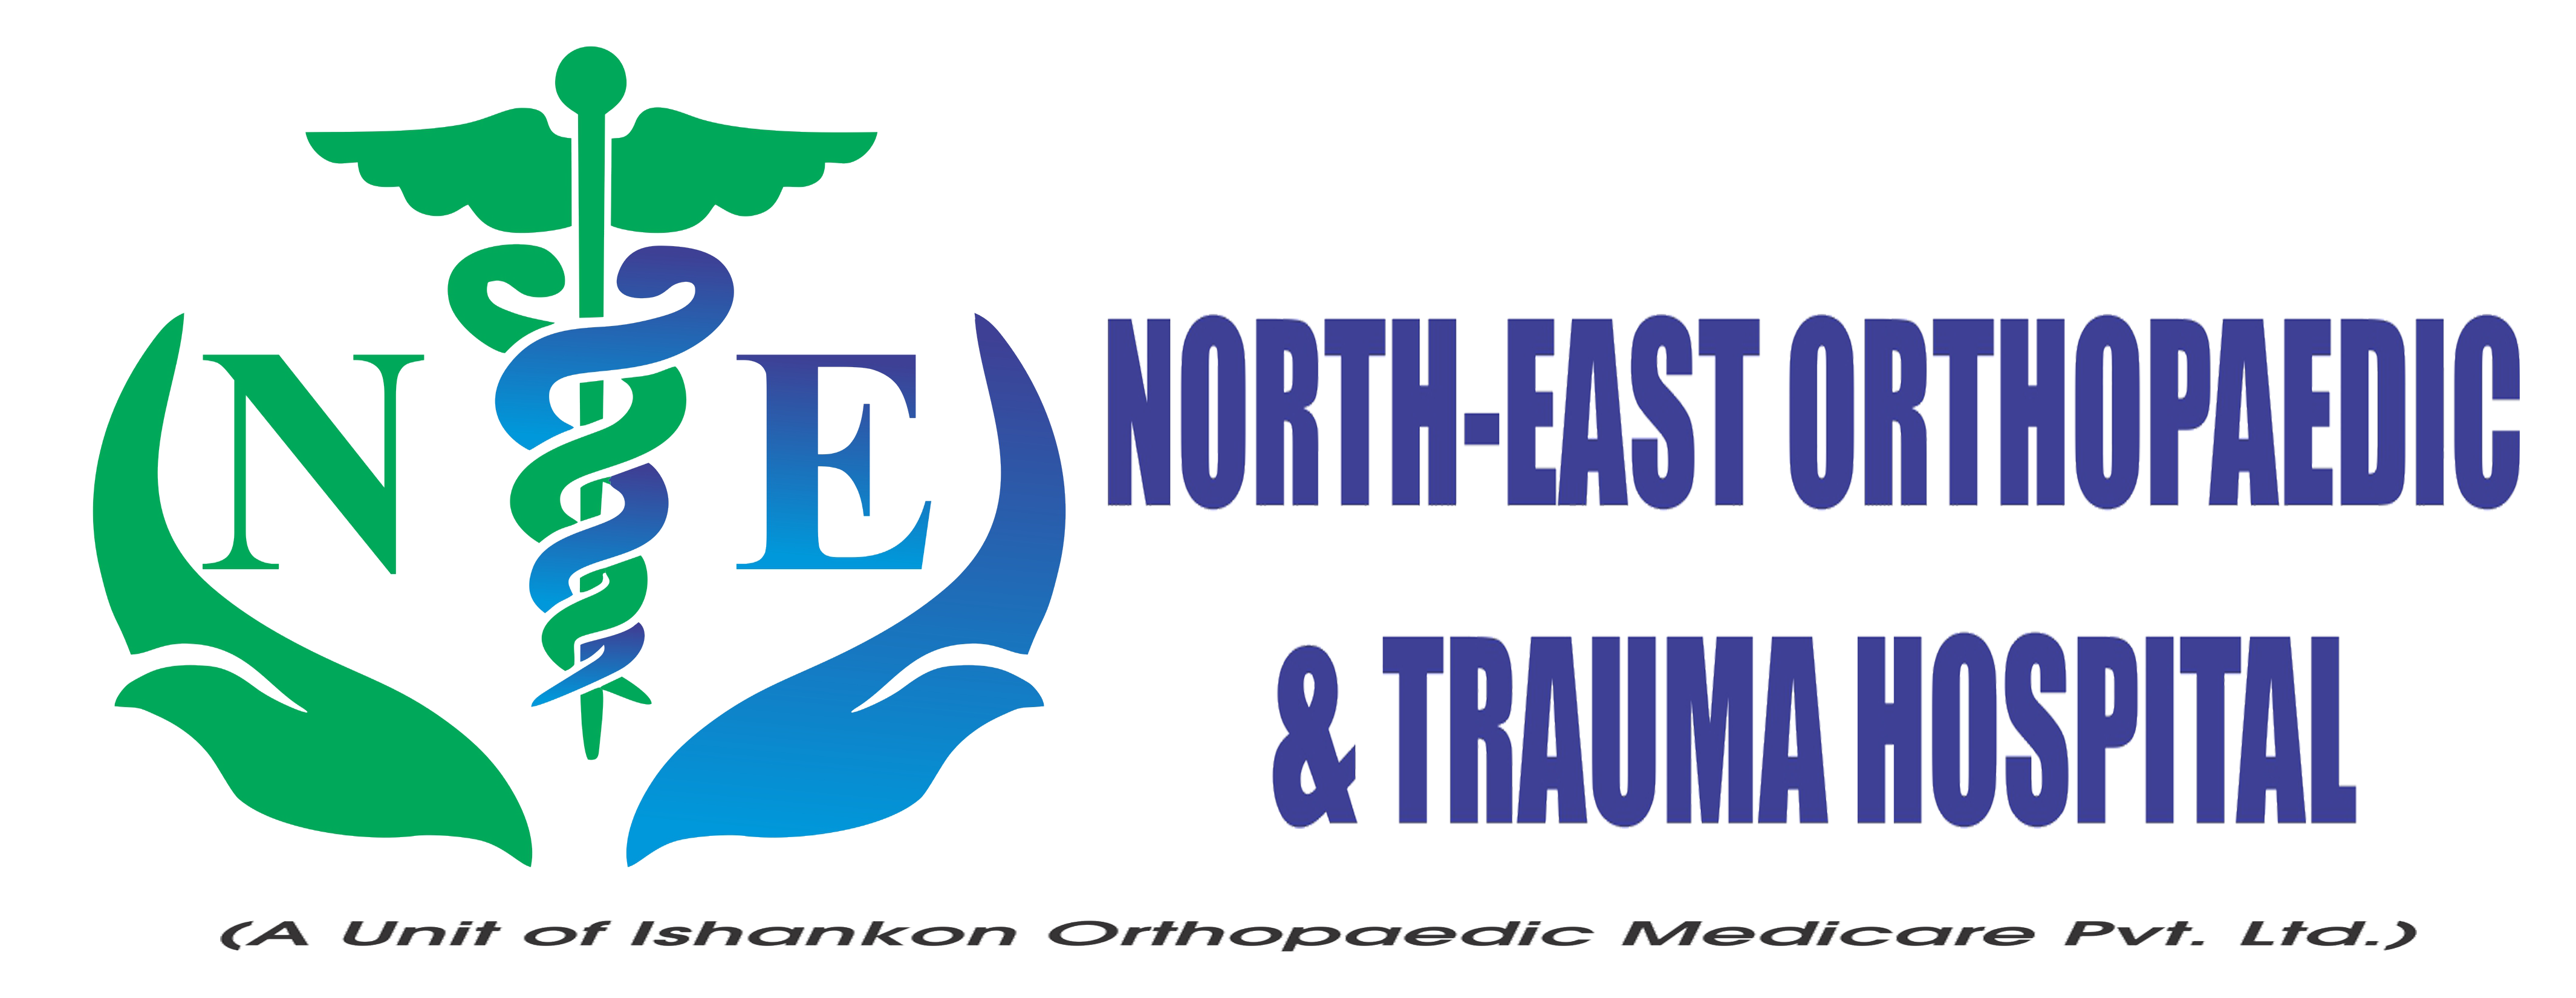 North East Orthopedic & Trauma Hospital